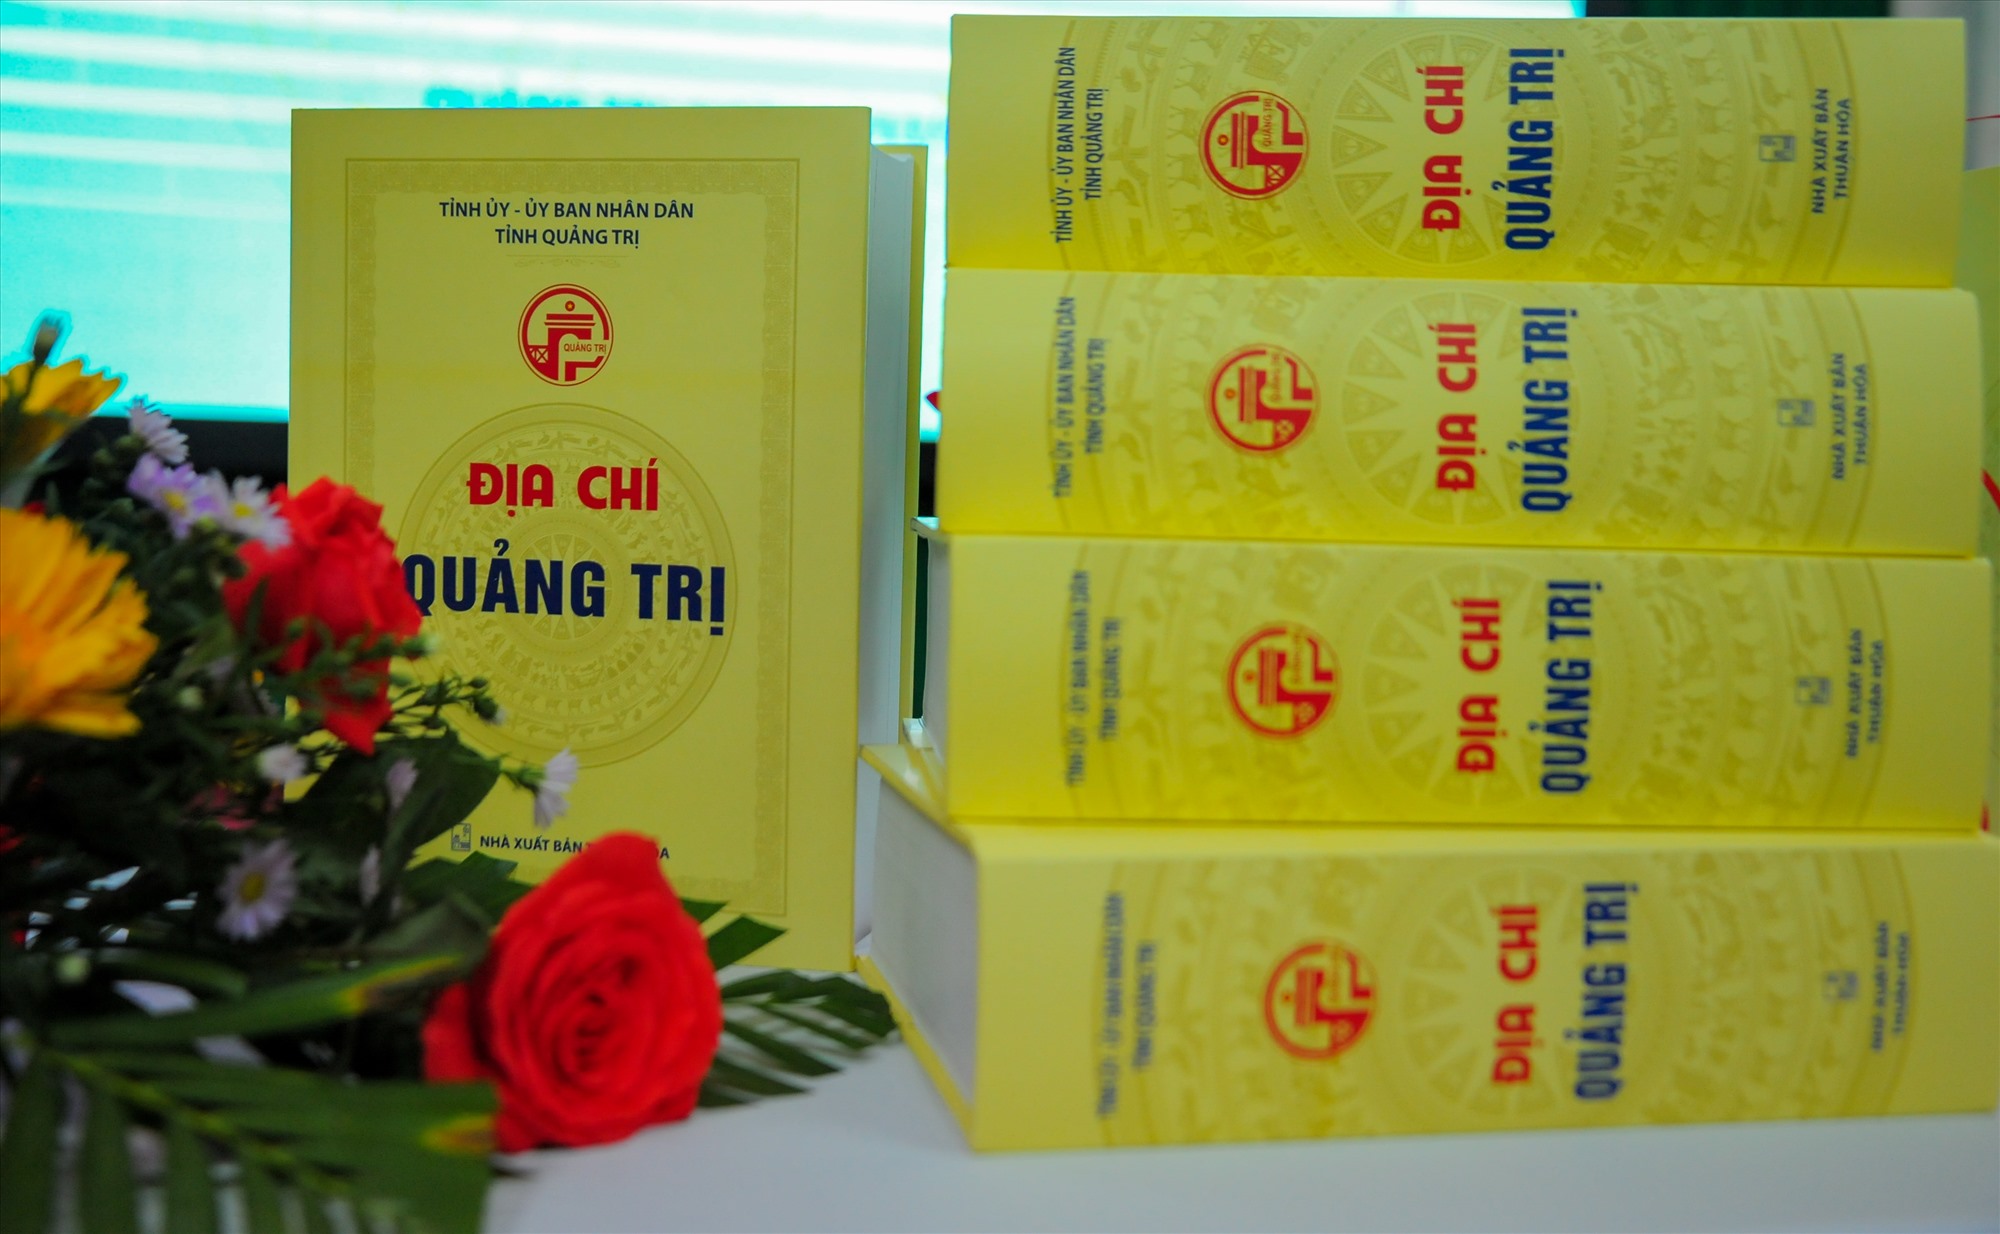 Sở Khoa học và Công nghệ phối hợp với Nhà xuất bản Thuận Hóa xuất bản 250 cuốn Địa chí Quảng Trị trong dịp kỷ niệm 50 năm Ngày giải phóng Quảng Trị - Ảnh: Trần Tuyền